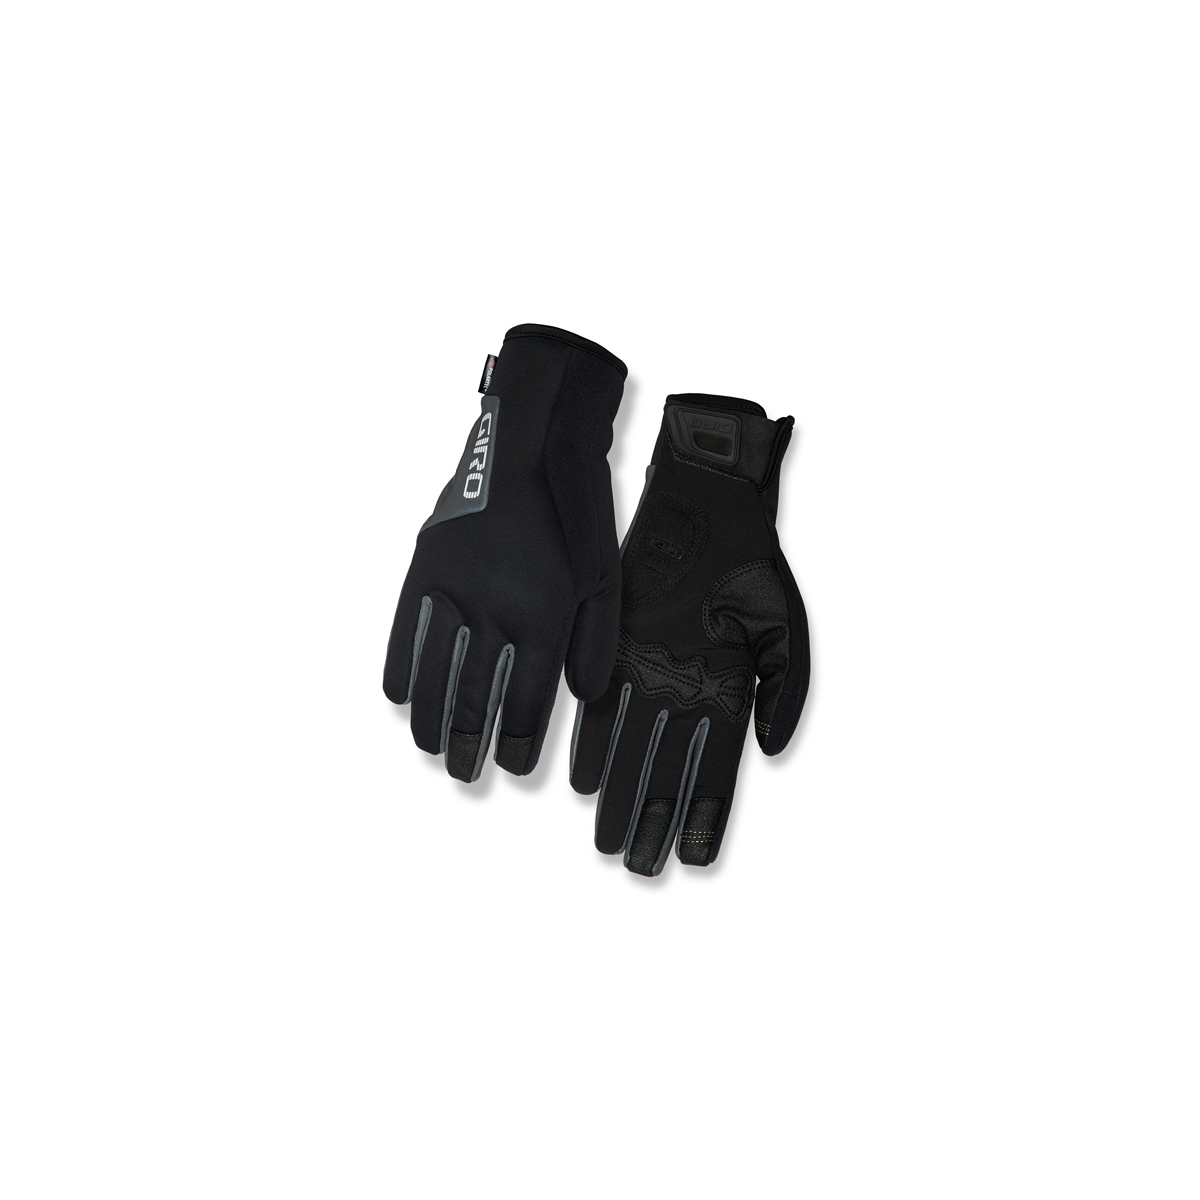 Rękawiczki zimowe GIRO CANDELA 2.0 długi palec bla